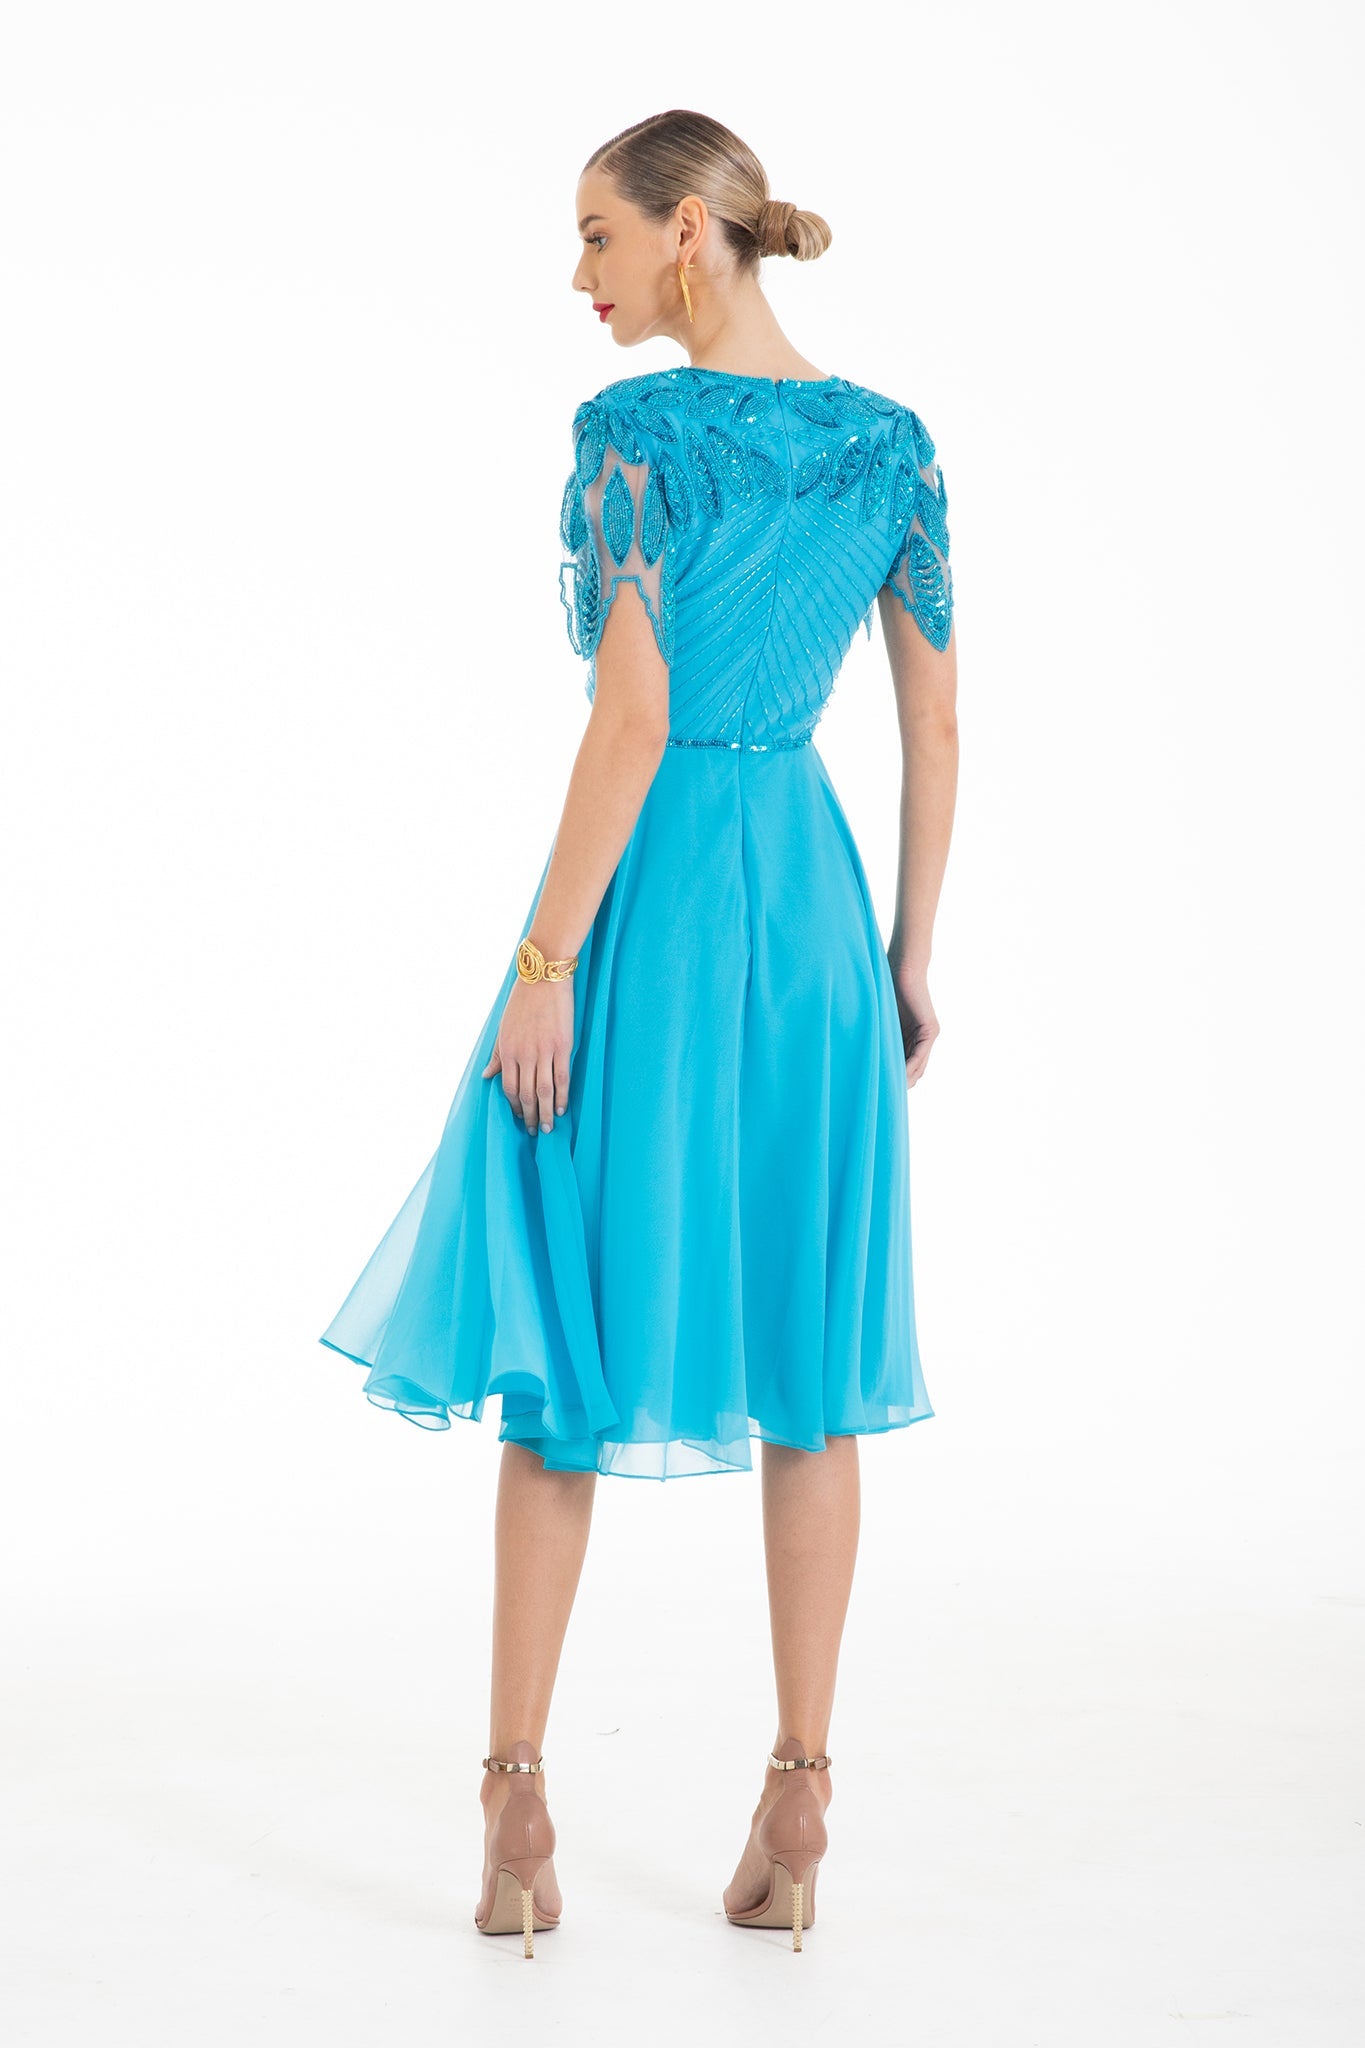 Ursula Embellished Dress